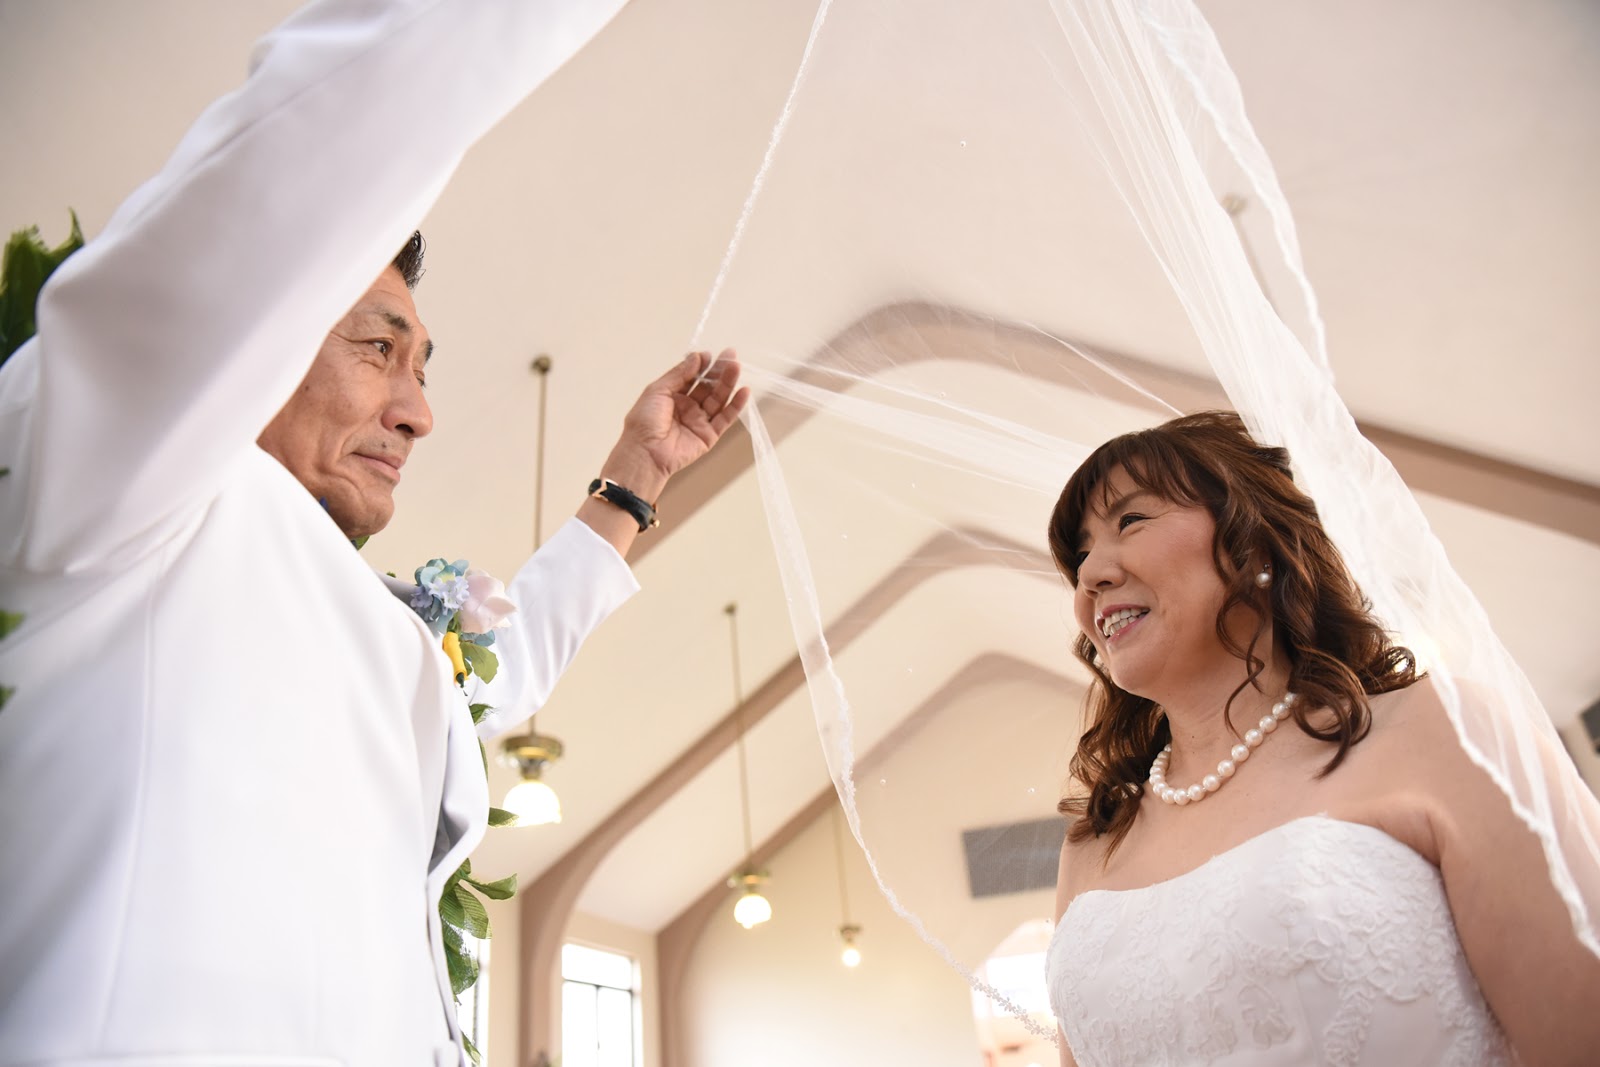 Hawaii Wedding Chapel: Hawaii Wedding Chapel: Shuichi & Machiko